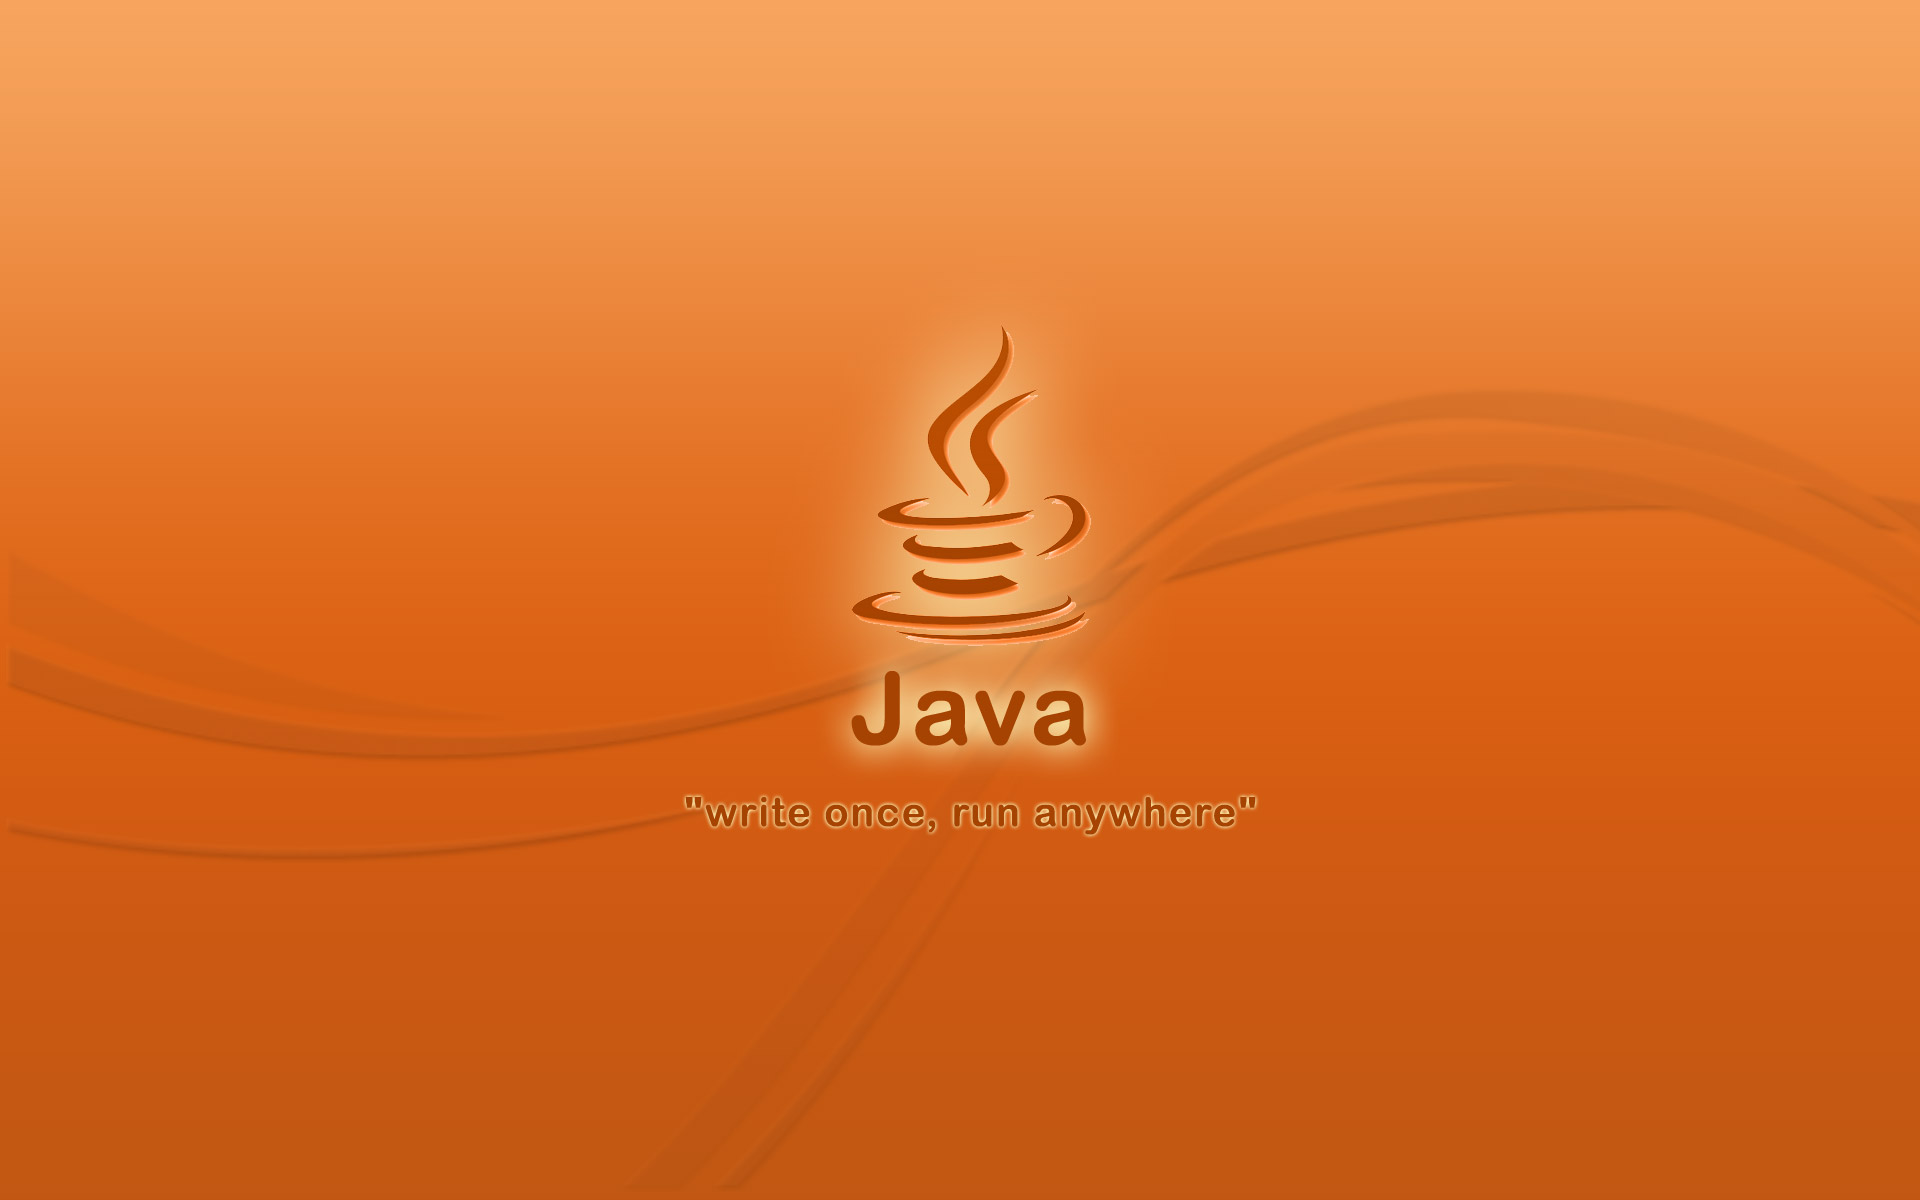 ��������� Java ��� ������� ������